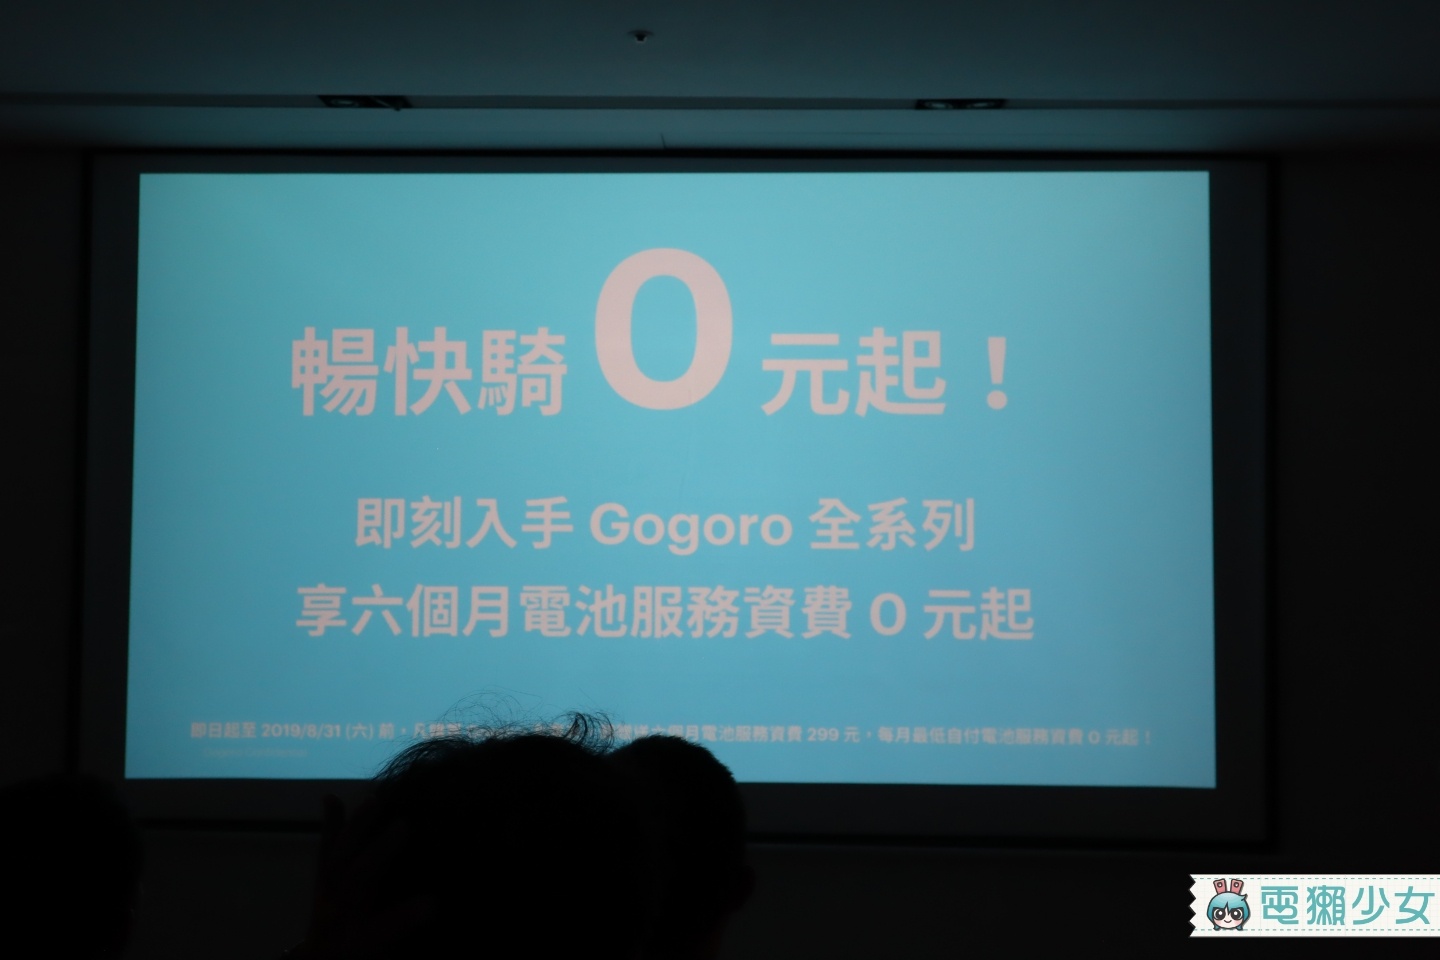 出門｜Gogoro 2系列新升級 前方多了『 多功能置物架 』8/31前購車 前六個月電池資費0元起